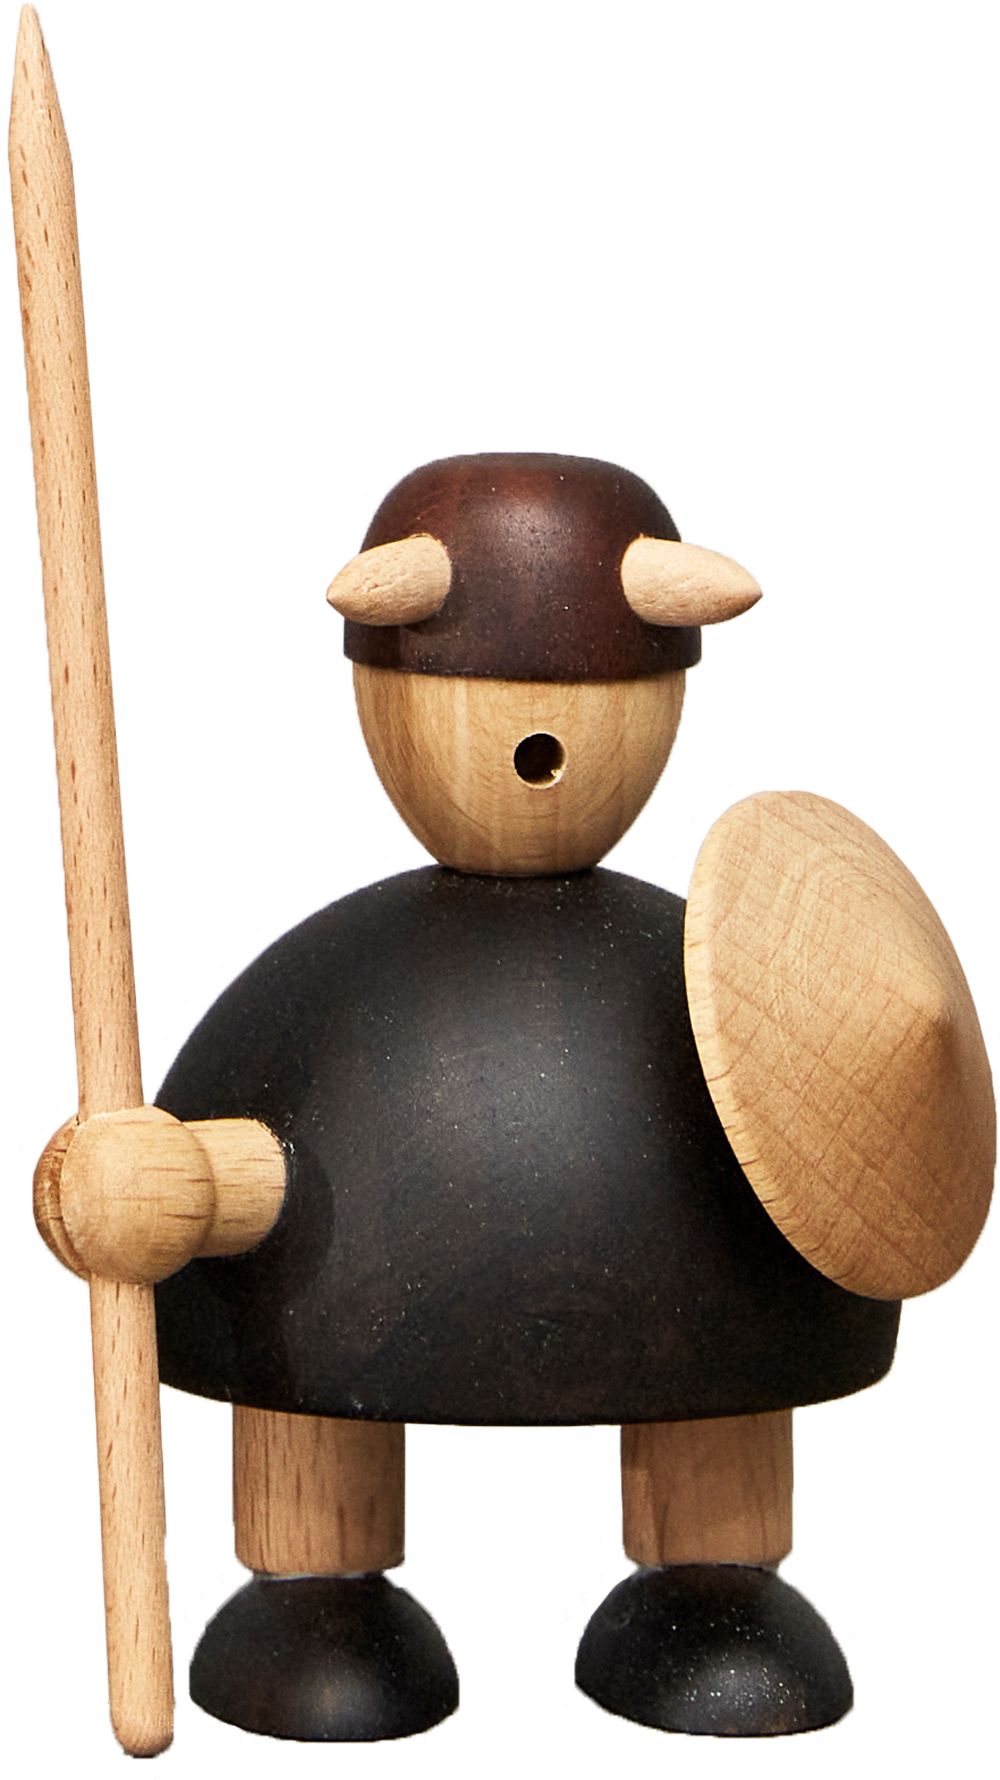 Meubles Andersen Les Vikings du Danemark Wooden Figure, ensemble de 3